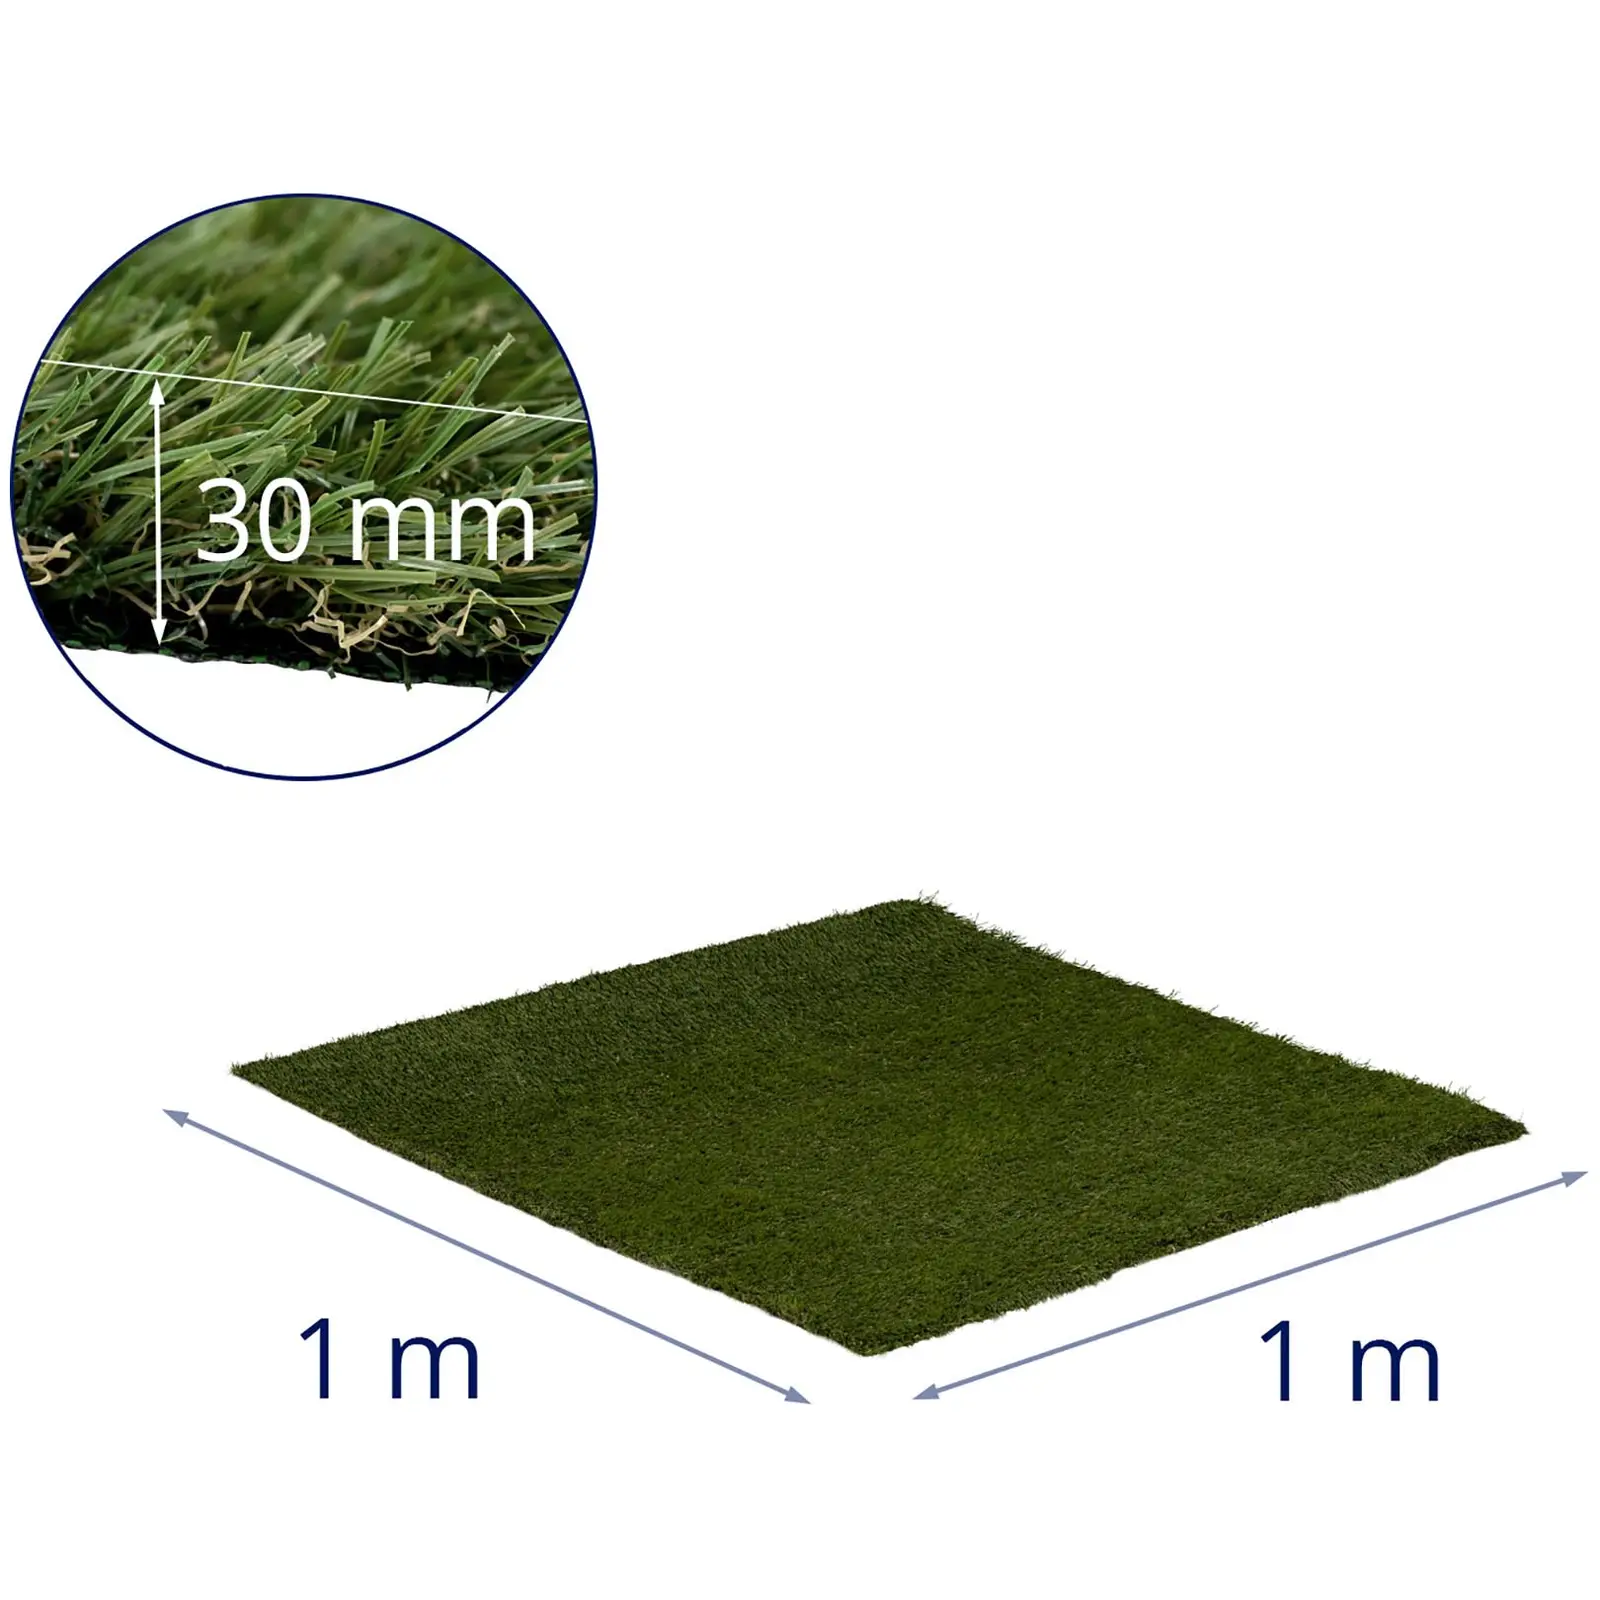 Erba sintetica - 100 x 100 cm - Altezza: 30 mm - Stitch Rate: 20/10 cm - Resistente ai raggi UV